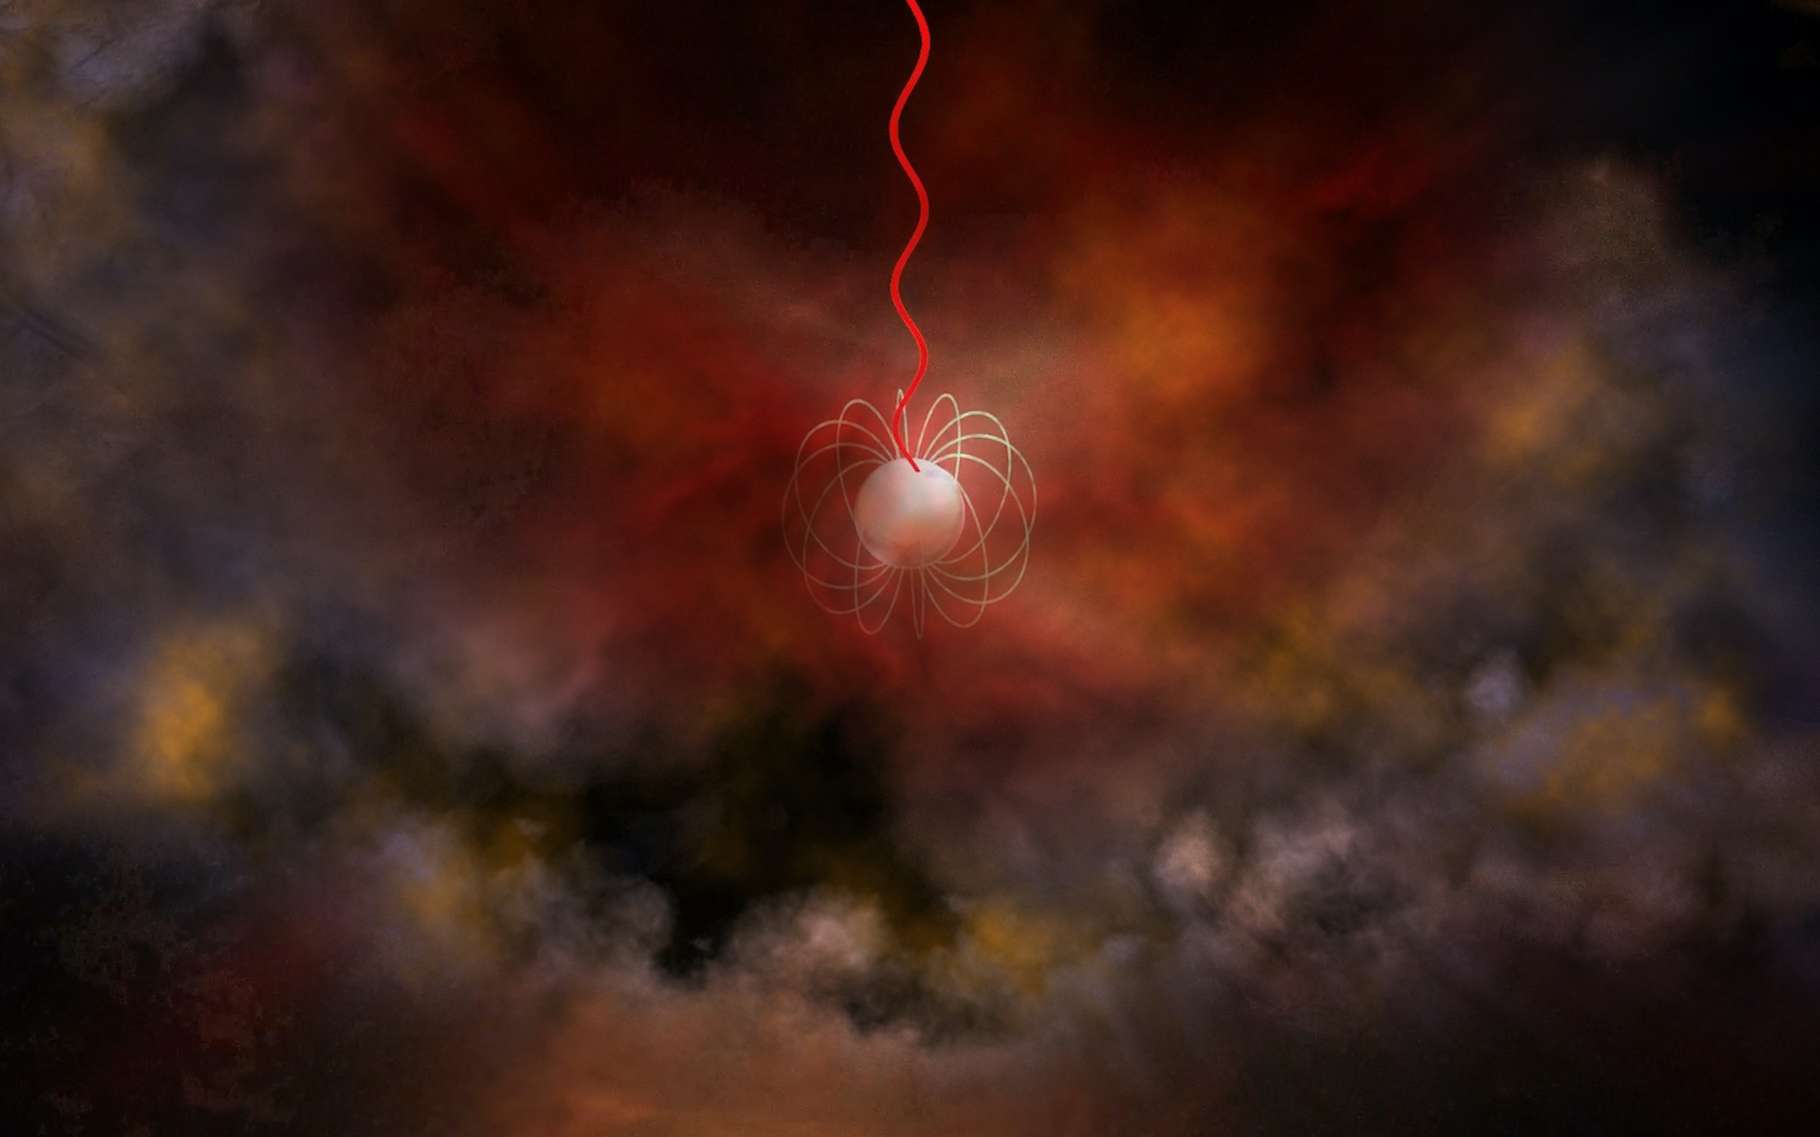 Les magnétars, ces étoiles à neutrons entourées d’un champ magnétique ultrapuissant — ici en vue d’artiste —, pourraient être à l’origine de ceux que l’on nomme les sursauts radio rapides. Mais une nouvelle observation remet l’idée en question. © Bill Saxton, NRAO, AUI, NSF